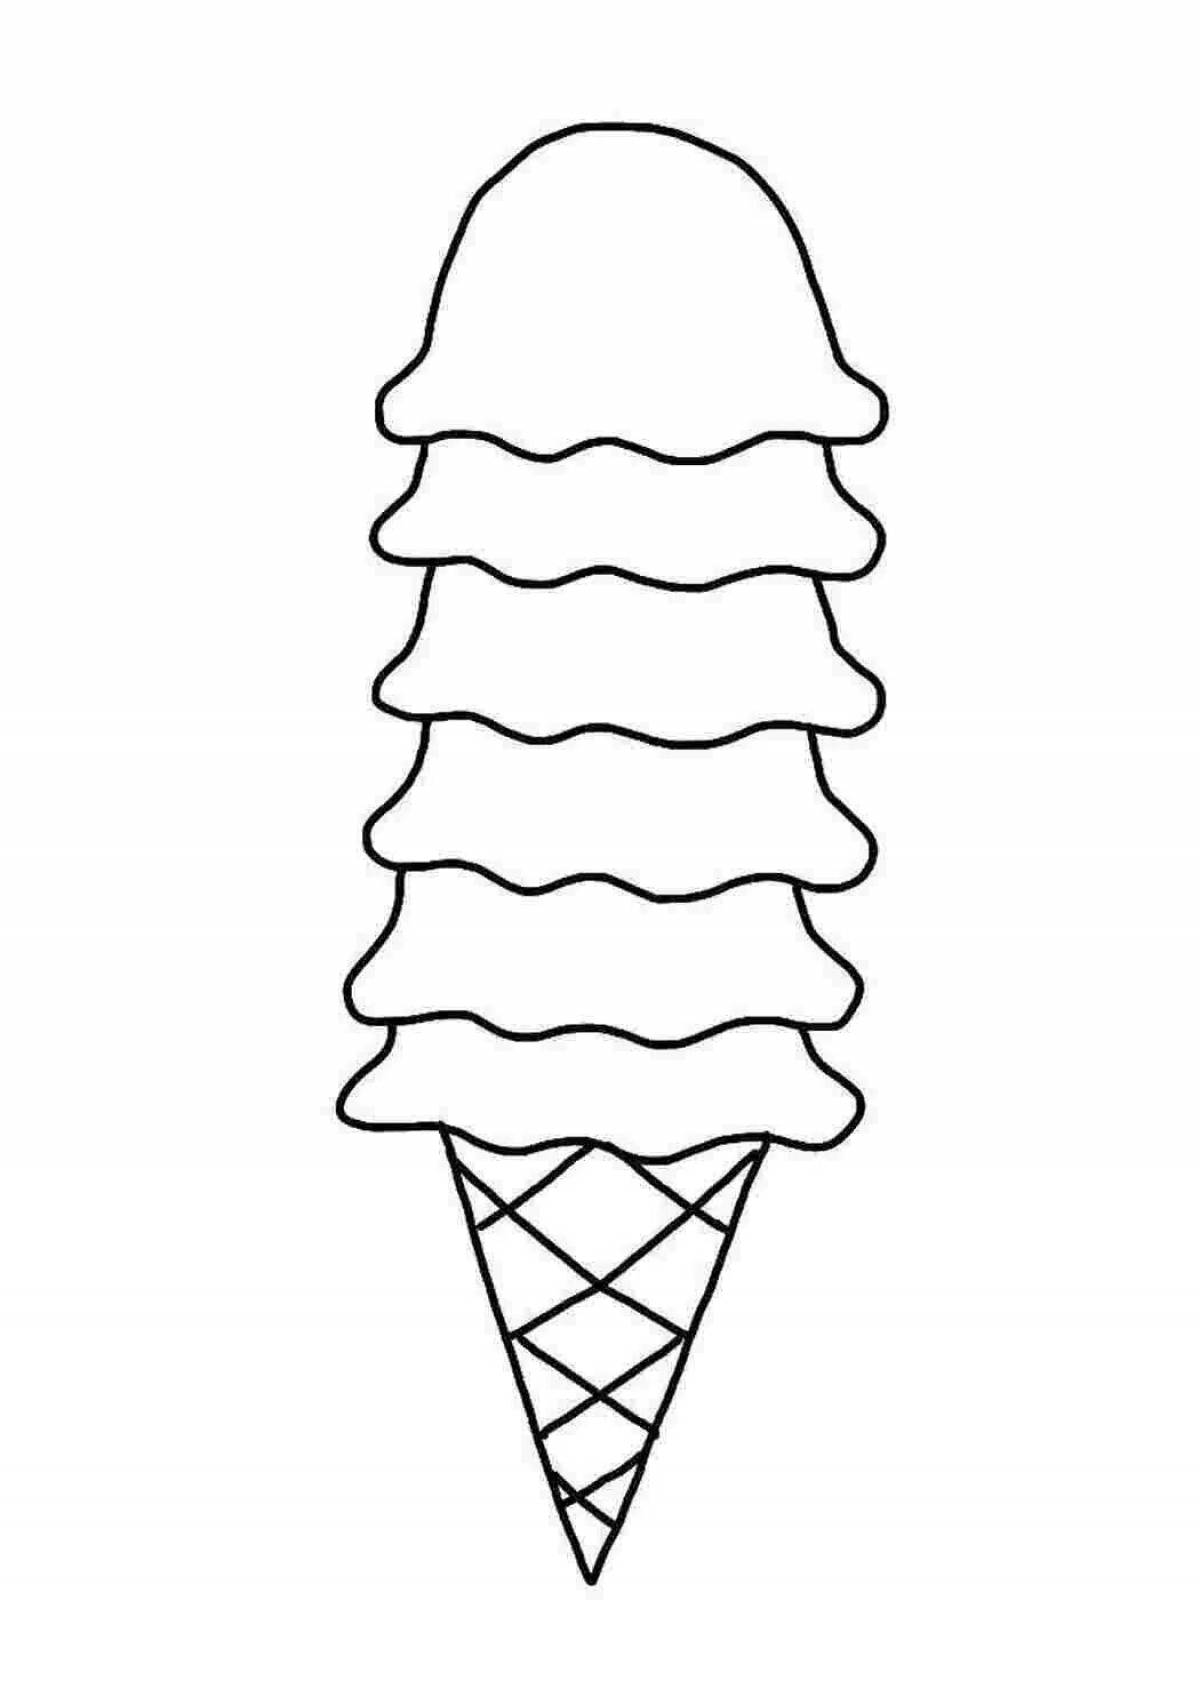 Раскраска мороженки. Раскраска мороженое. Мороженое раскраска для детей. Сладости раскраска для детей. Раскраска для девочек мороженое.